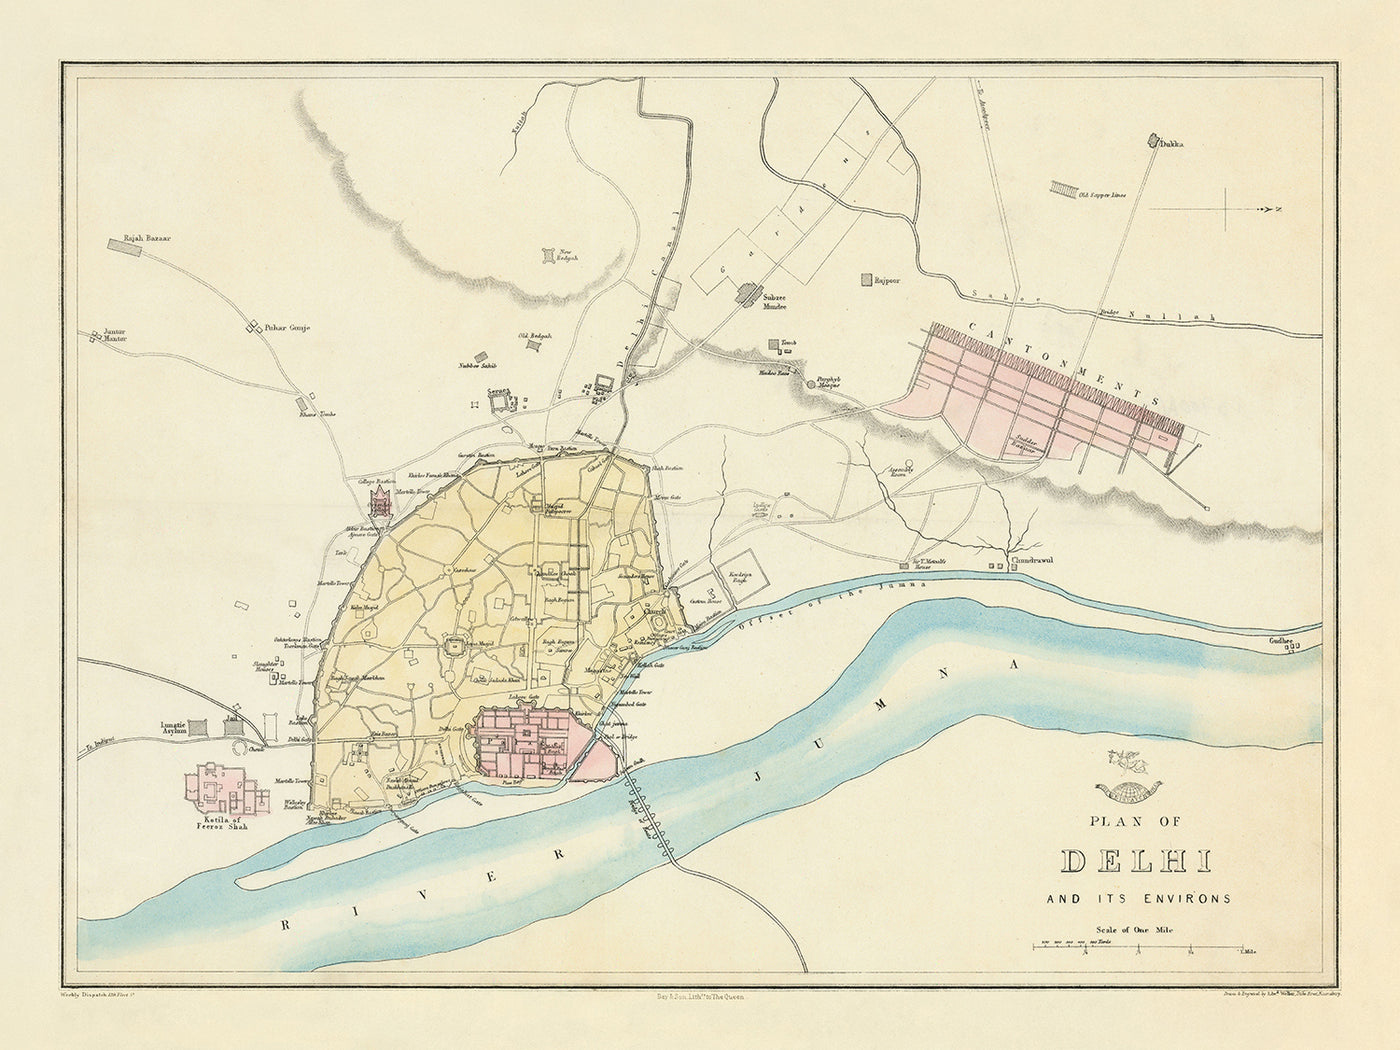 Ancienne carte de Delhi par Weller, 1860 : Jama Musjid, le palais, le pont de bateaux, les cantonnements, la rivière Jumna